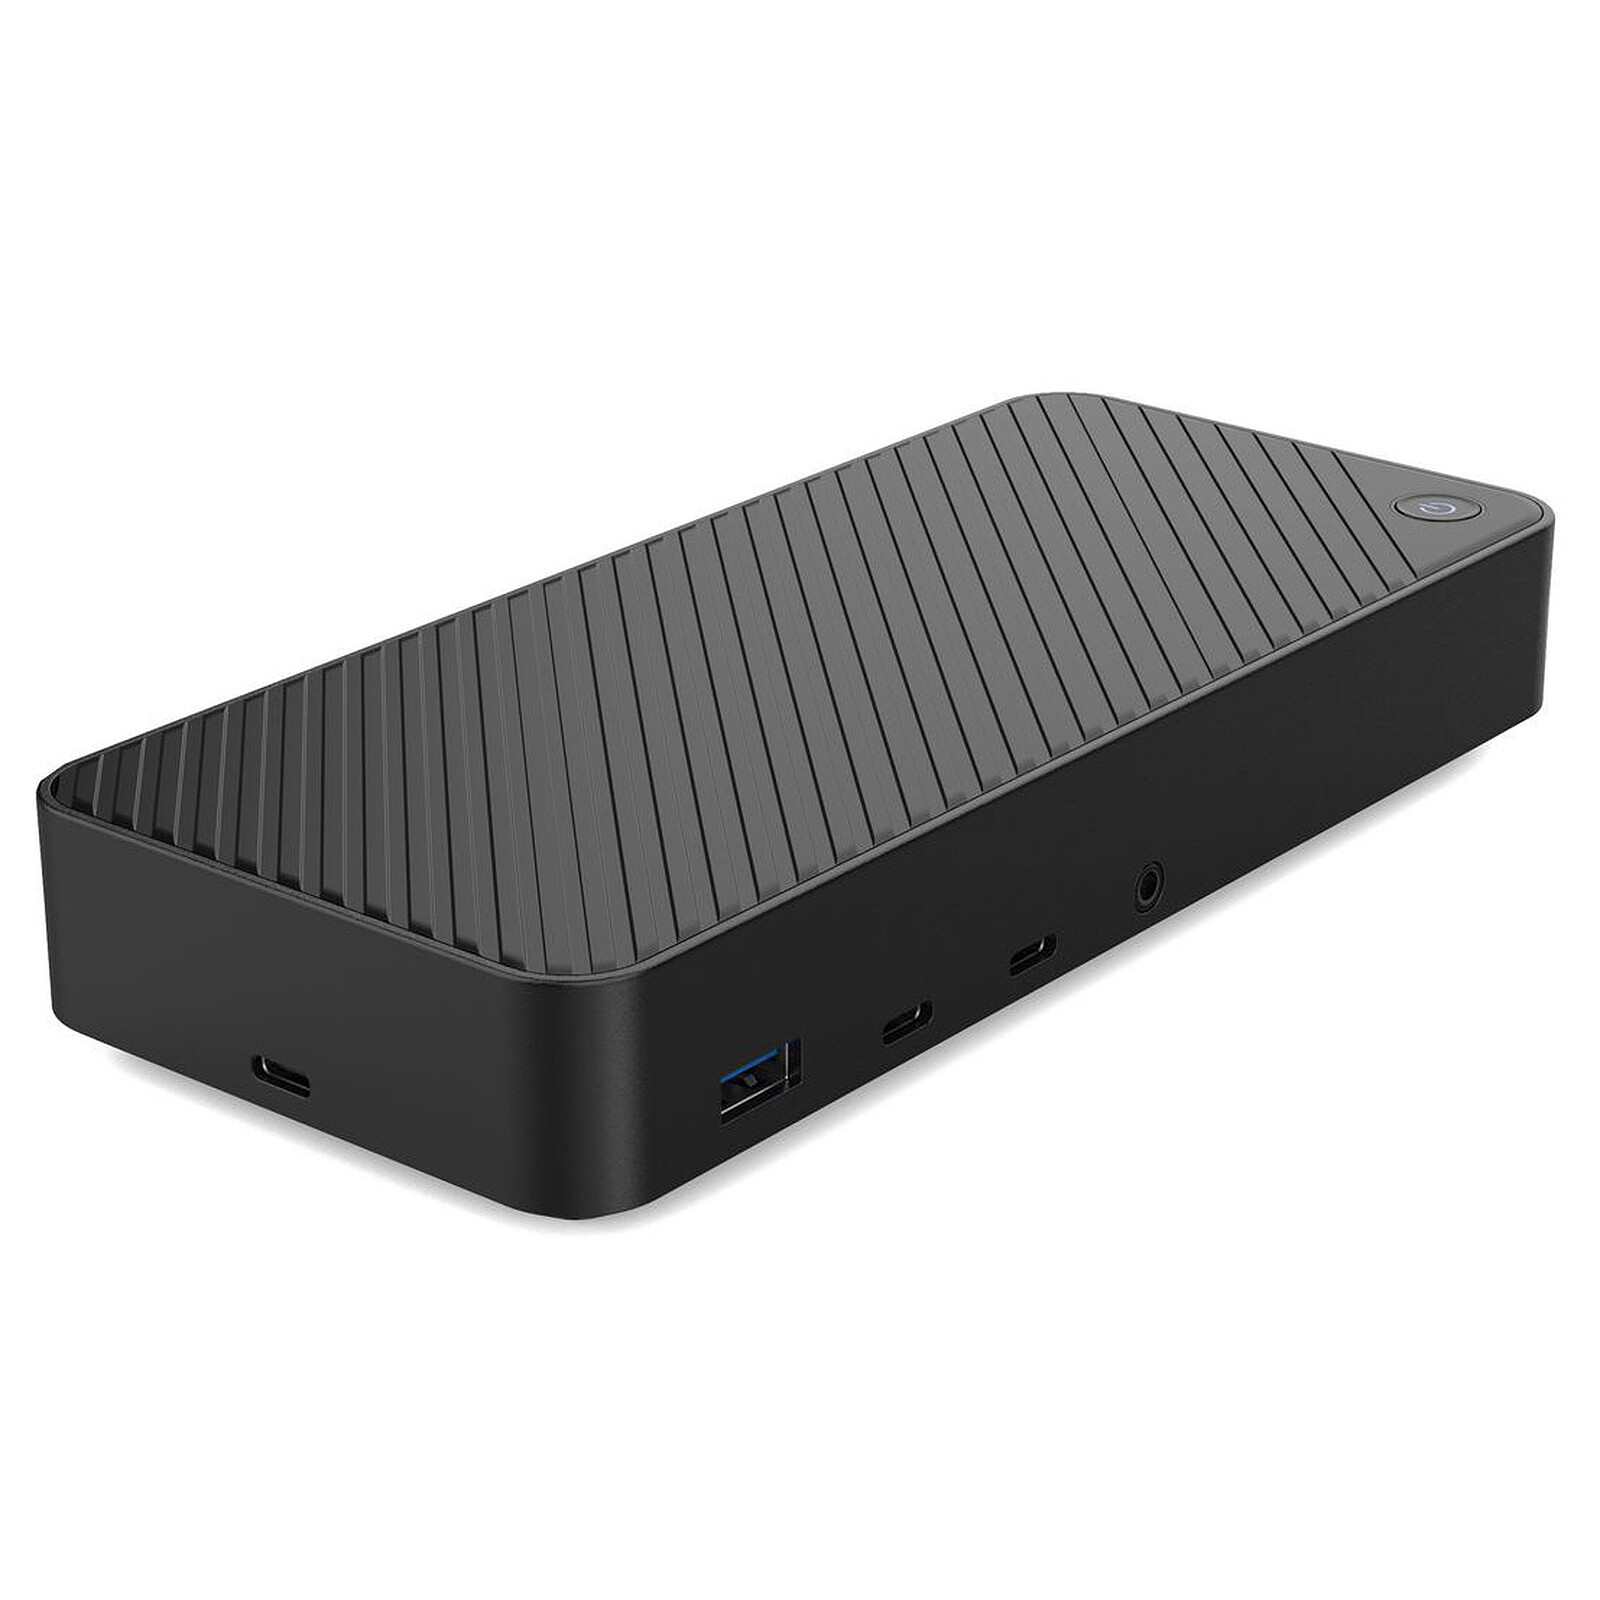 HP USB-C/A Universal Dock G5 (5TW10ET#ABB) - Station d'accueil PC portable  - Garantie 3 ans LDLC